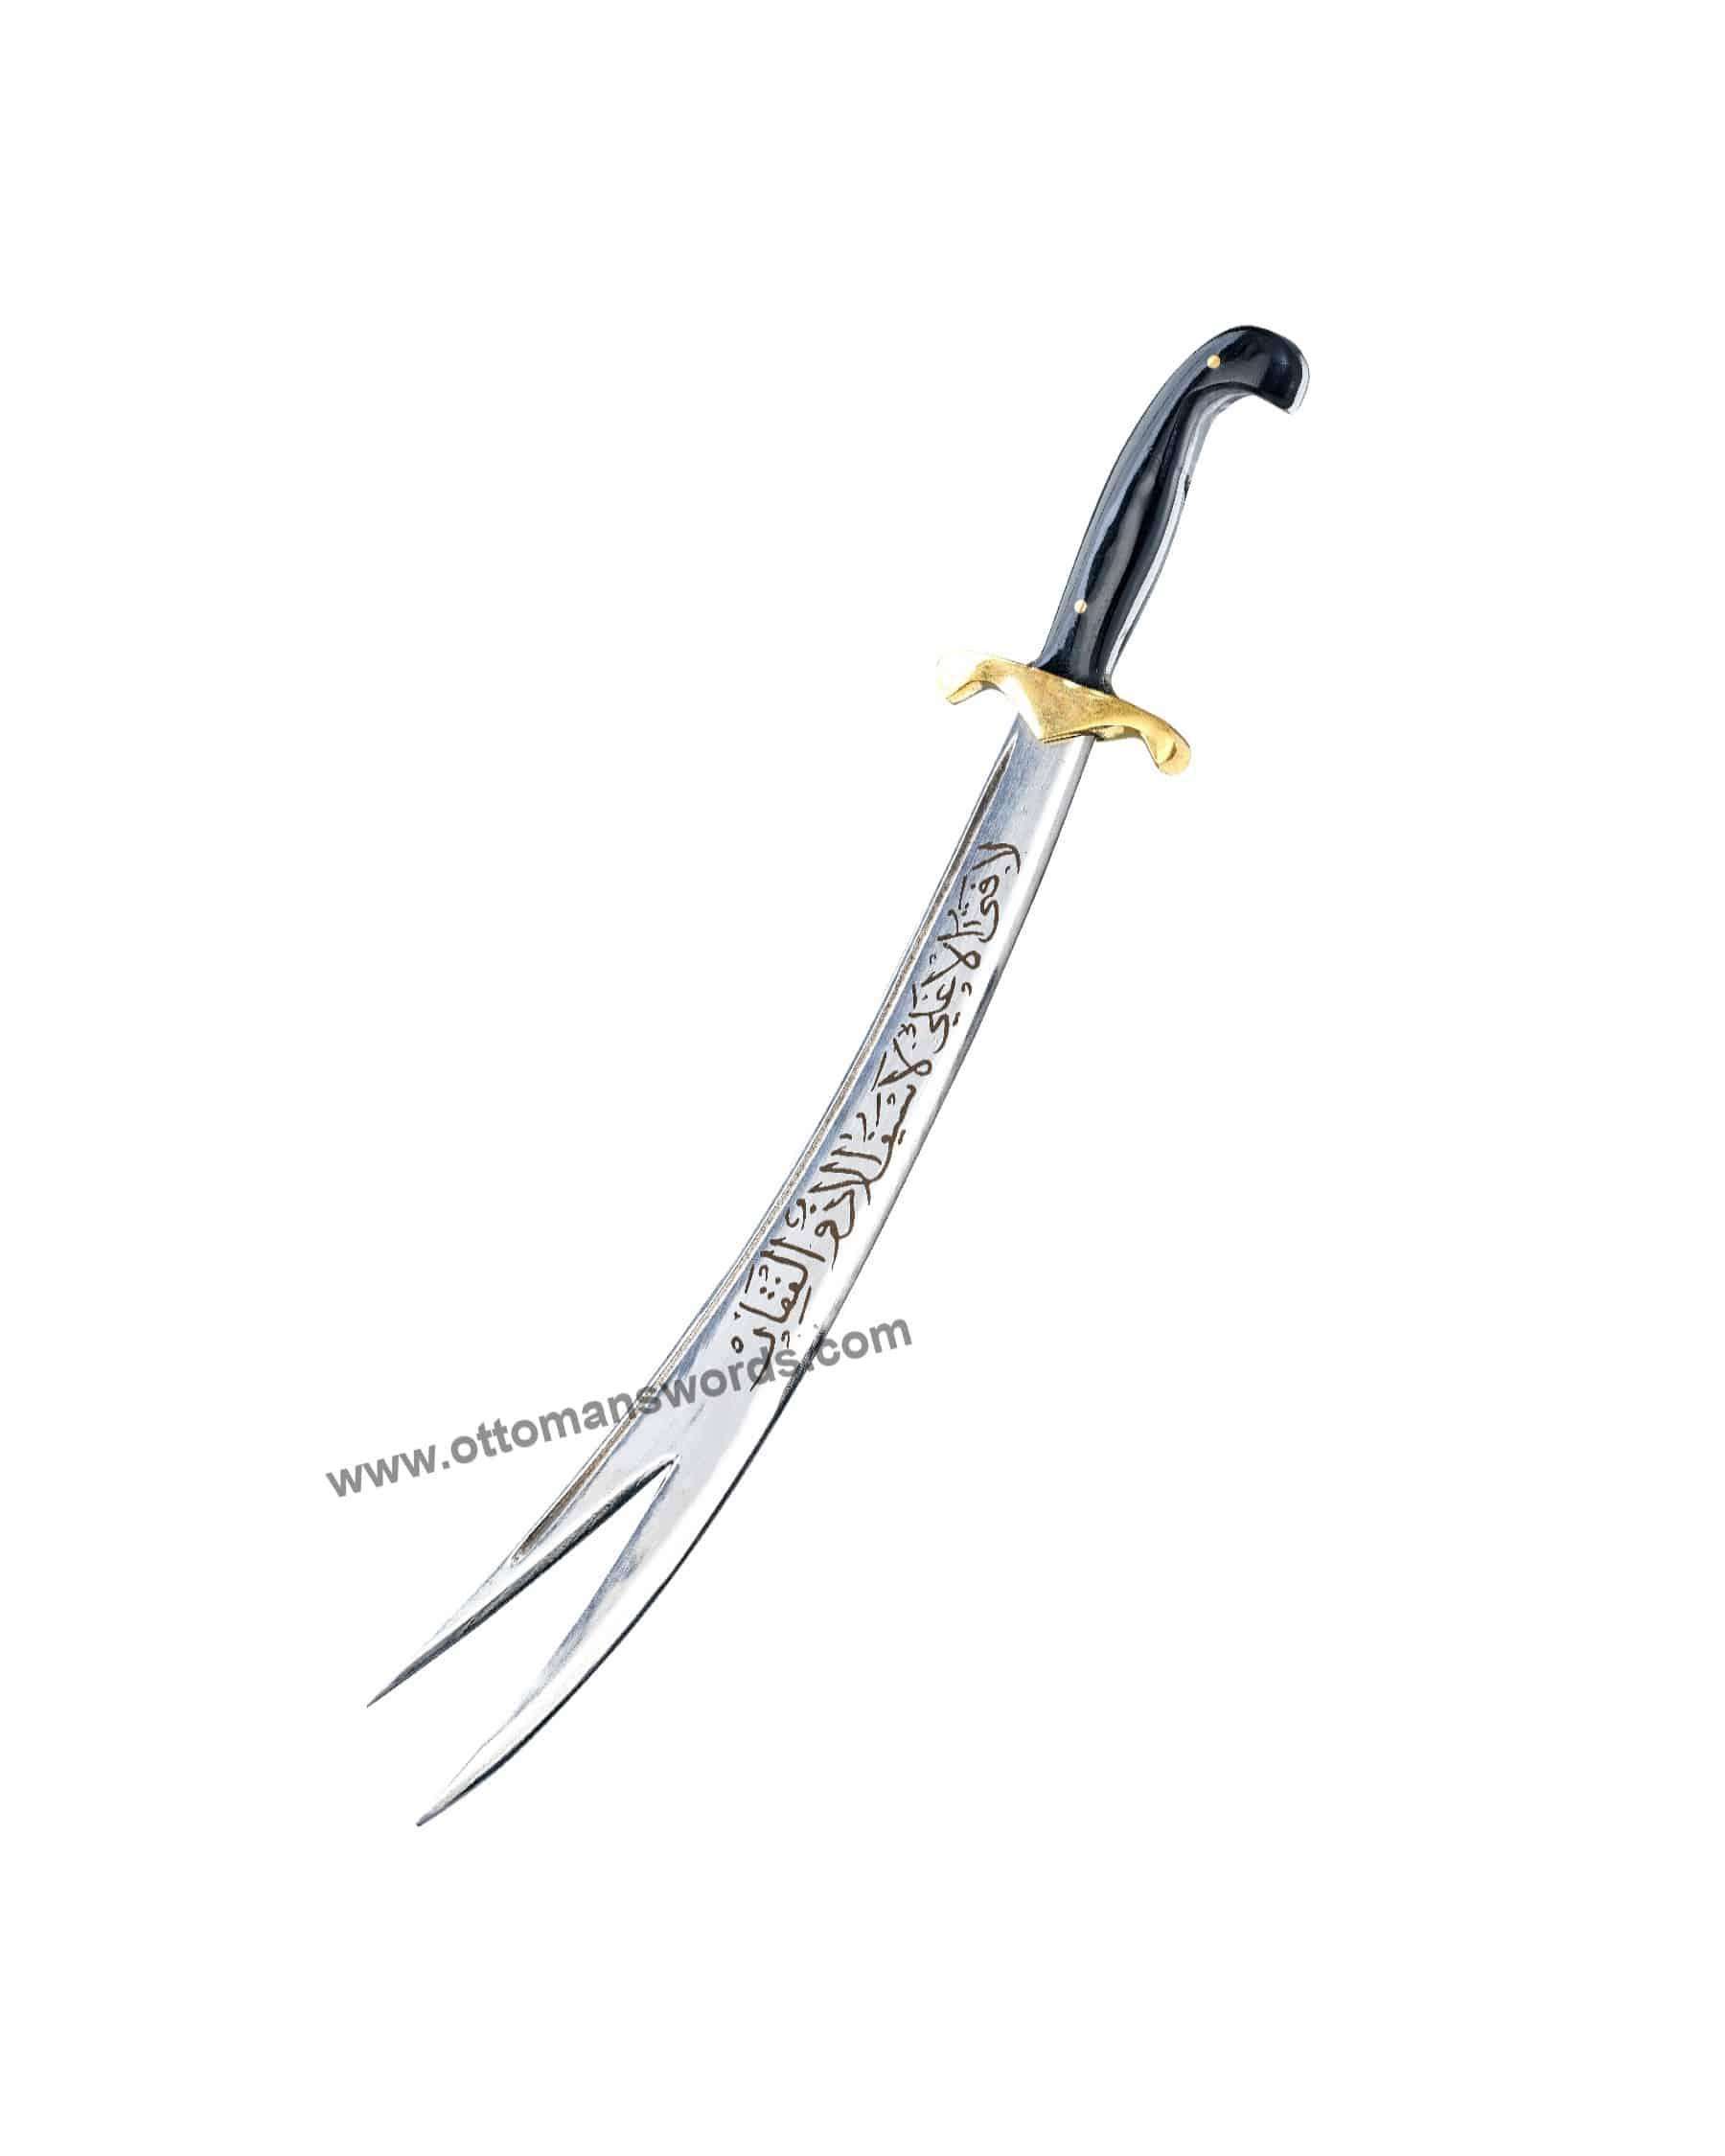 Miniature Zulfiqar Sword